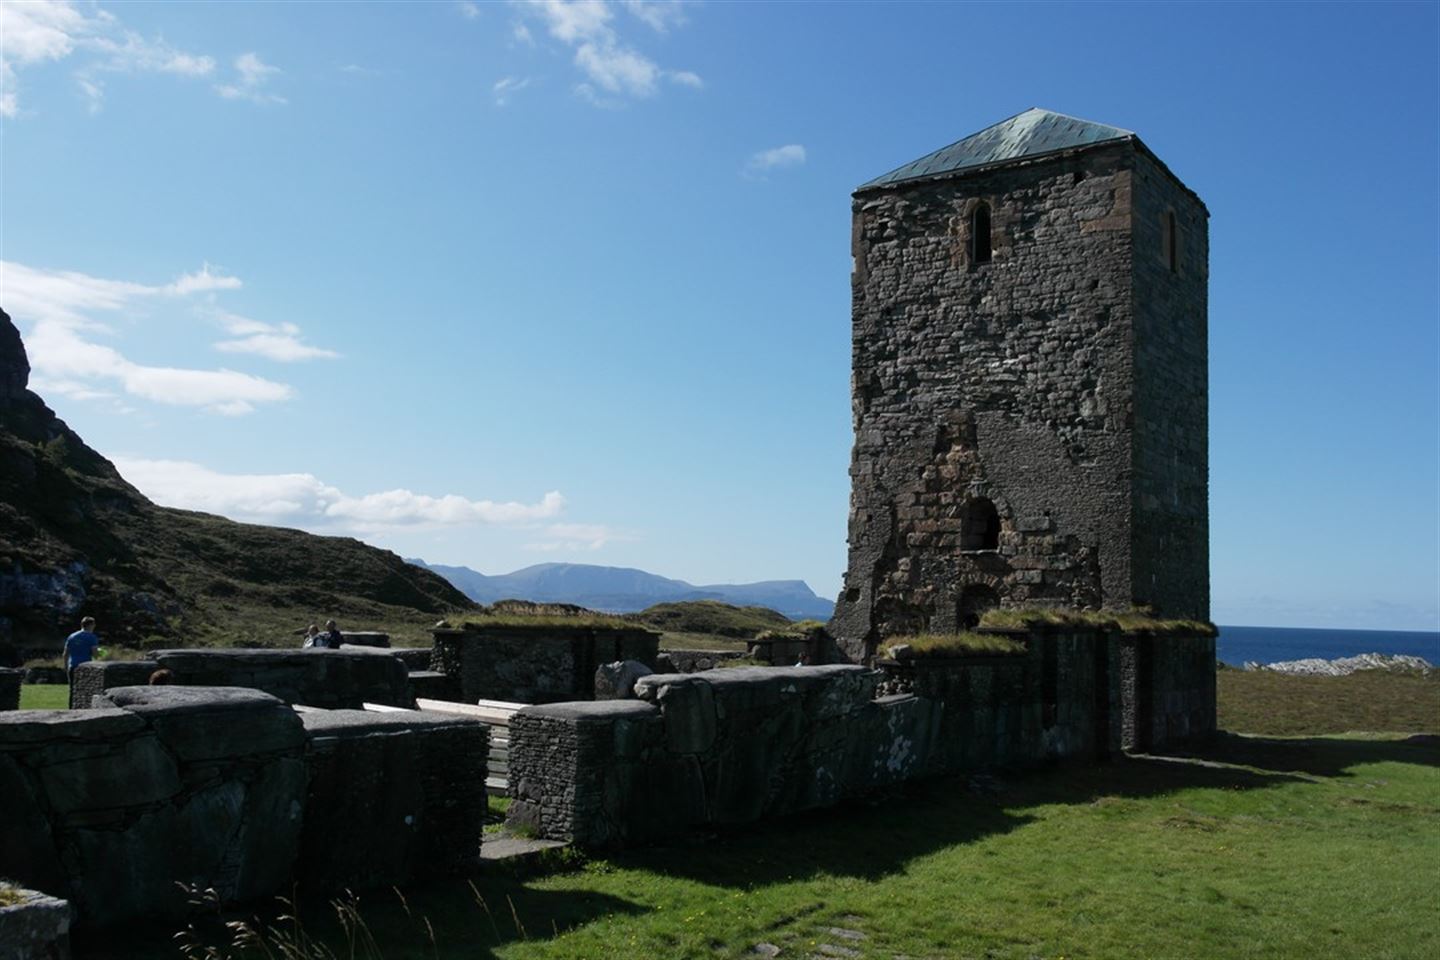 TRULEG ELDST: Selja kloster er frå 1100-talet og truleg det eldste klosteret i Noreg.